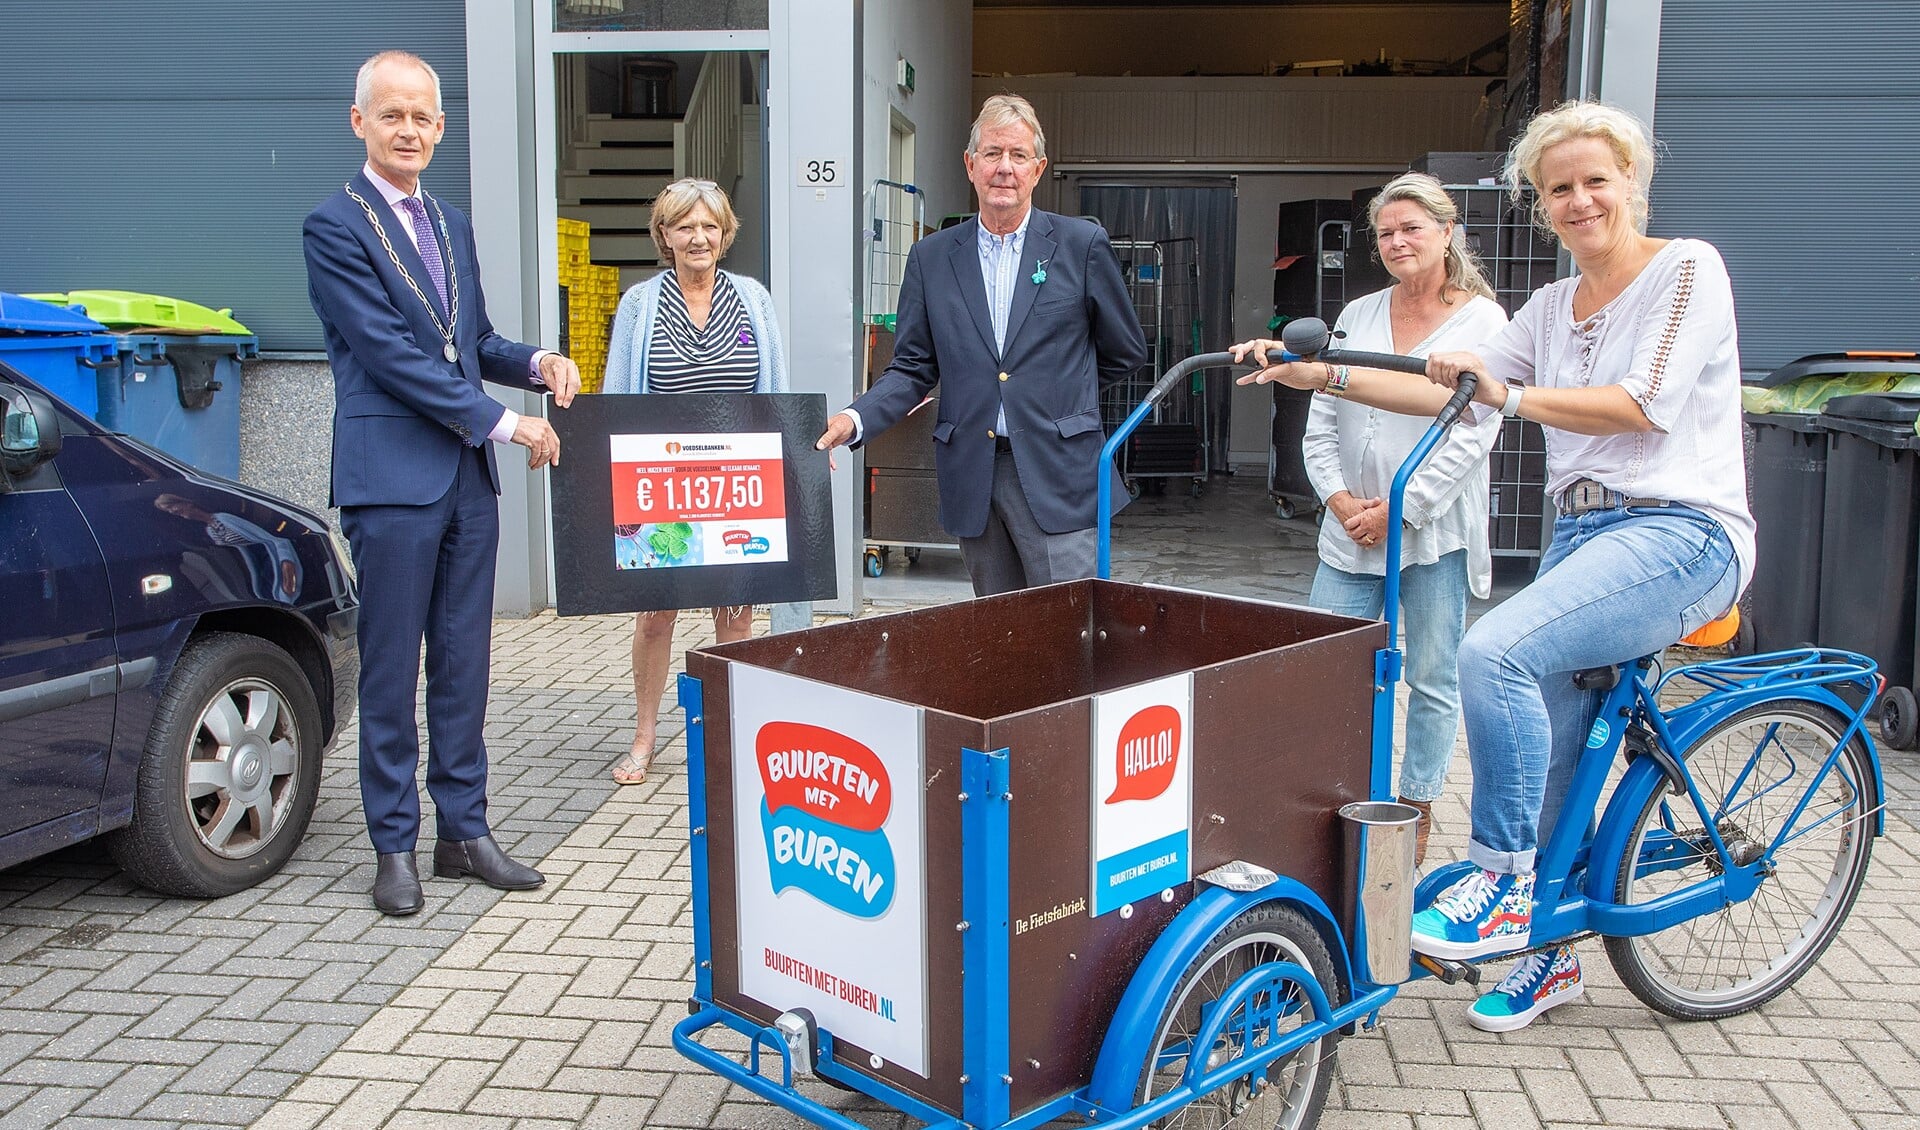 Burgemeester Niek Meijer mocht de cheque van Buurten met Buren overhandigen aan de voedselbank.